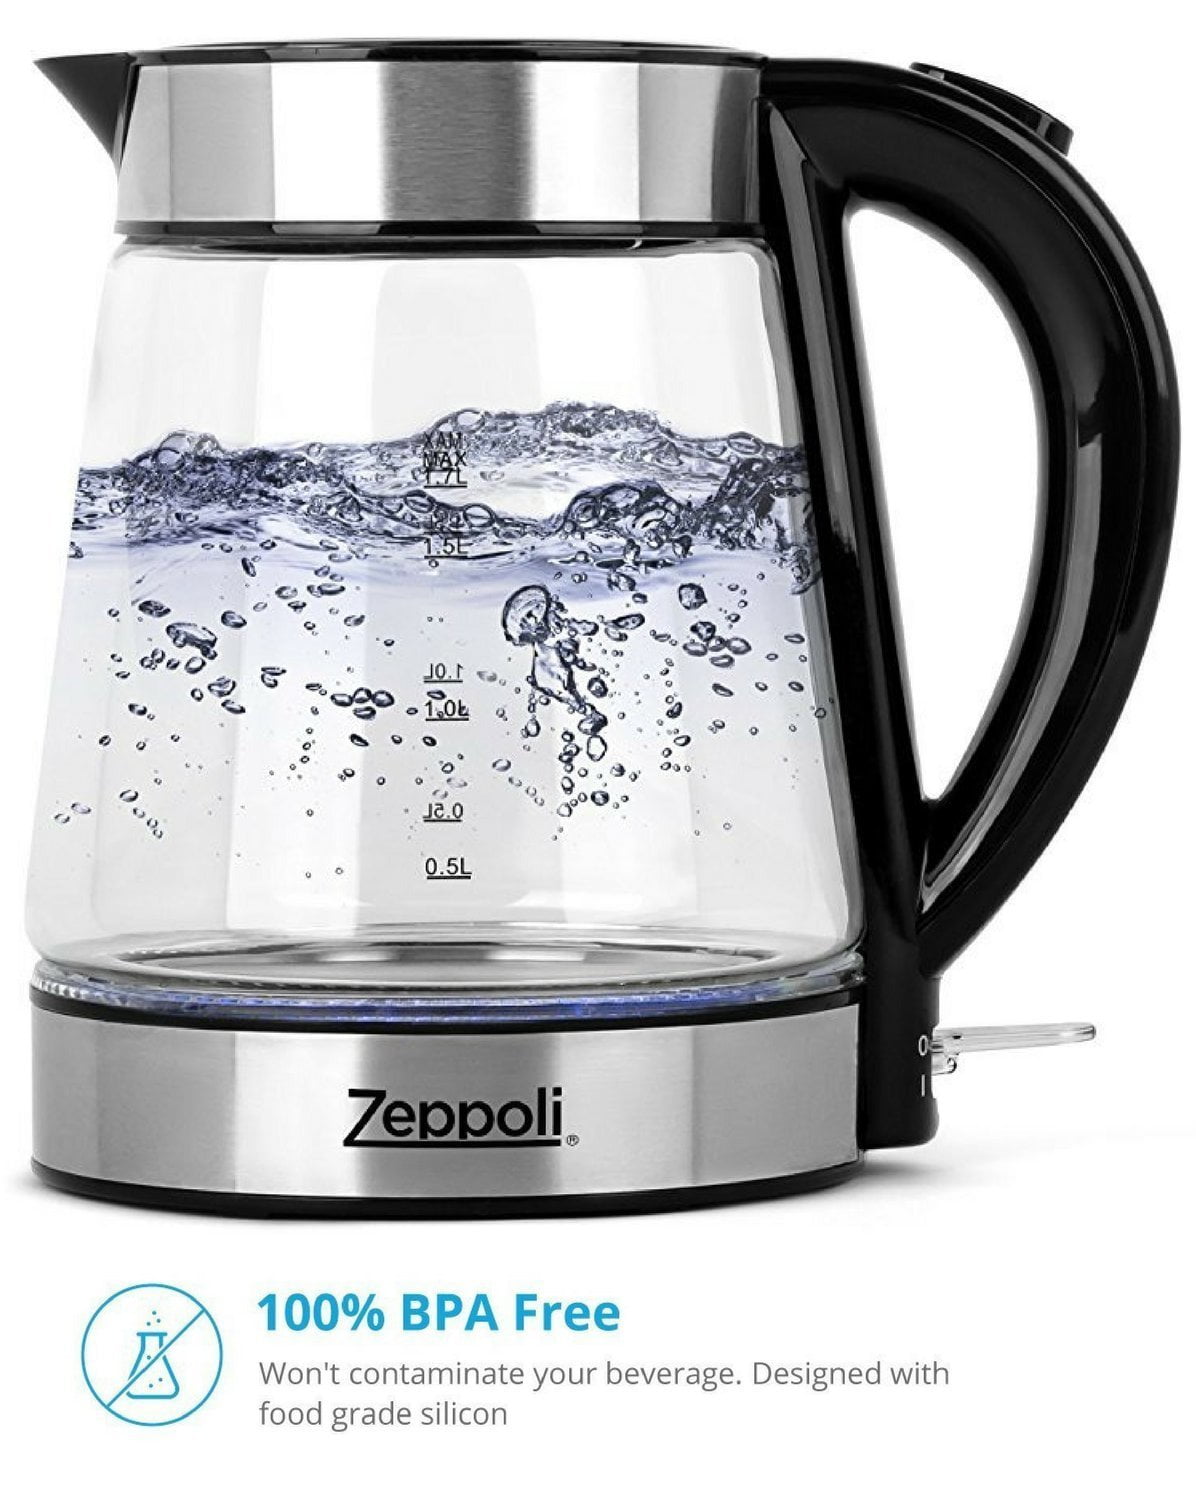 zeppoli electric kettle fast boiling glass tea kettle cordless